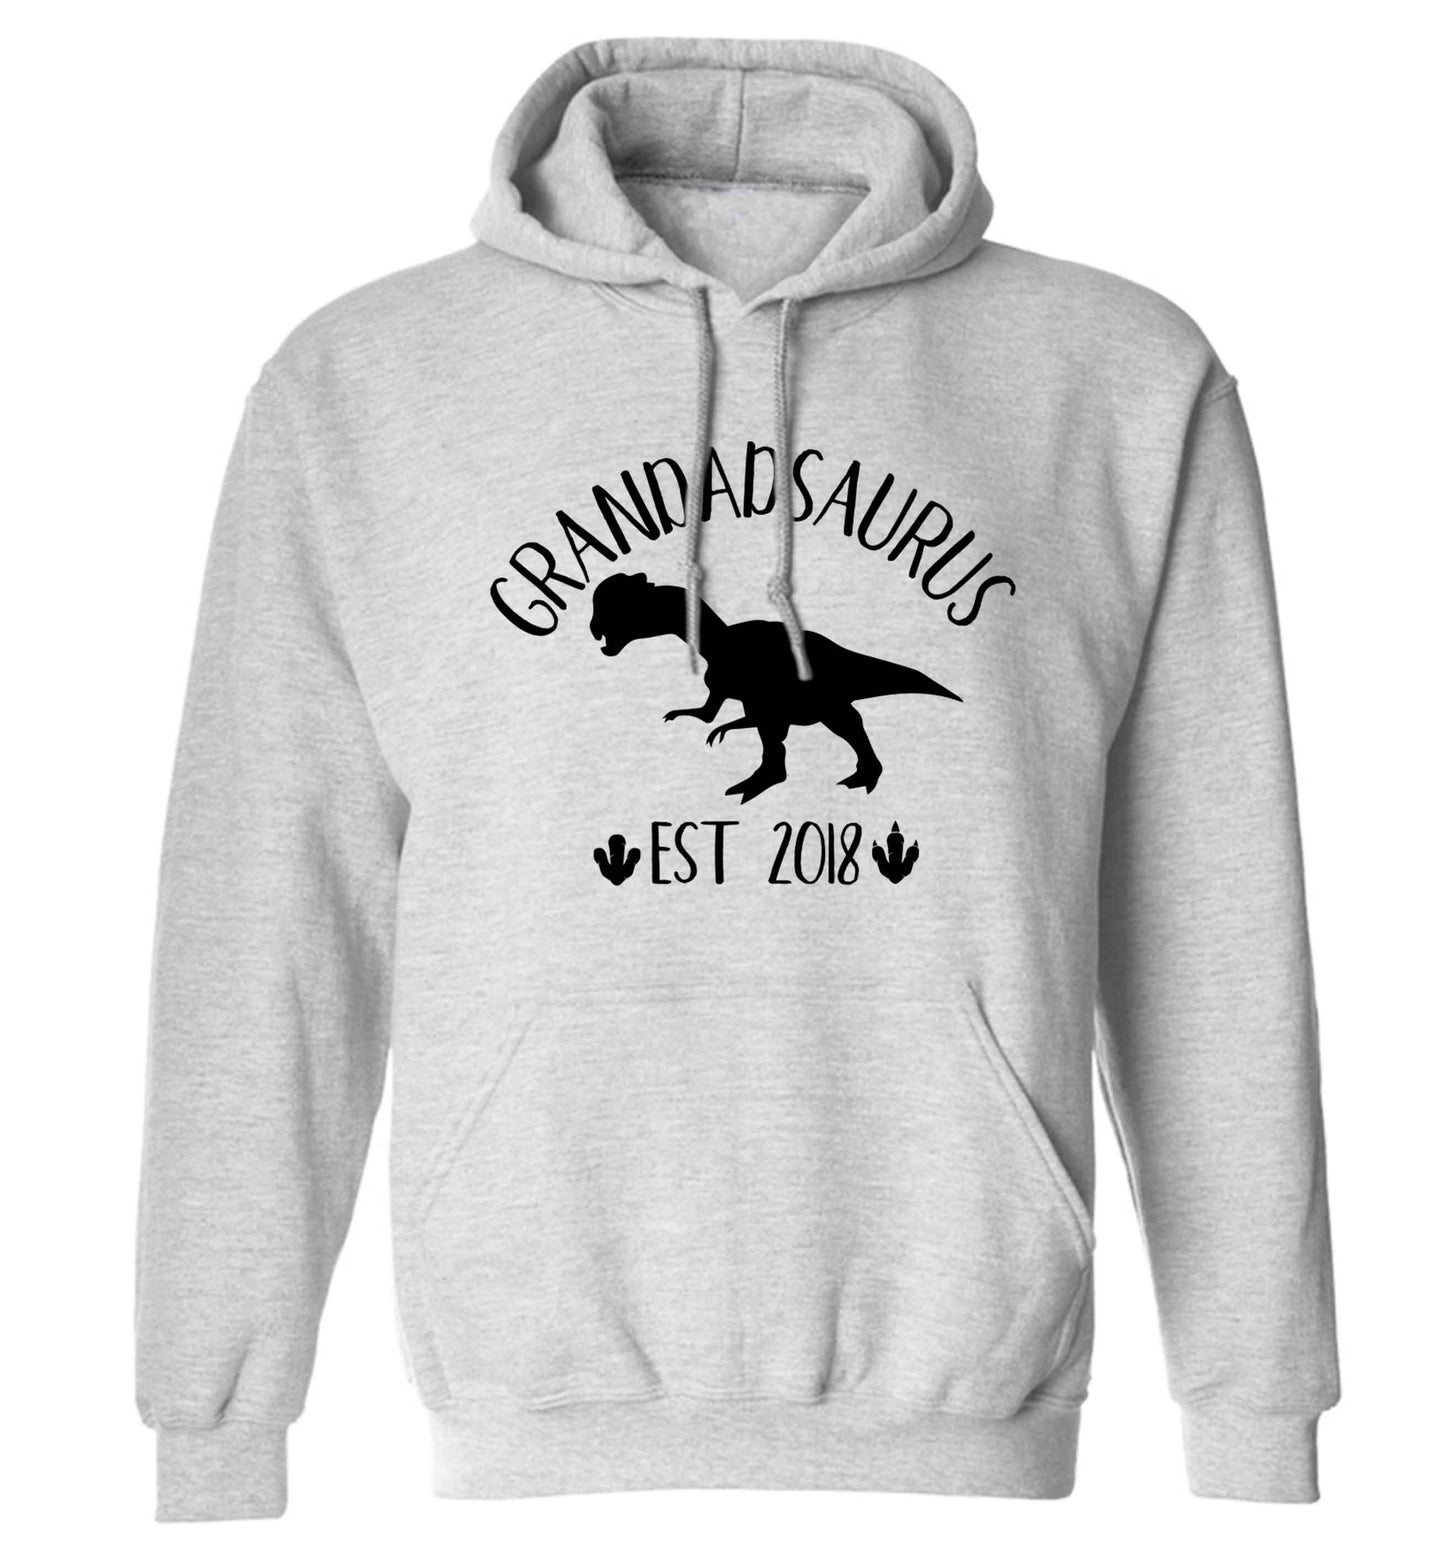 Personalised grandadsaurus since (custom date) adults unisex grey hoodie 2XL